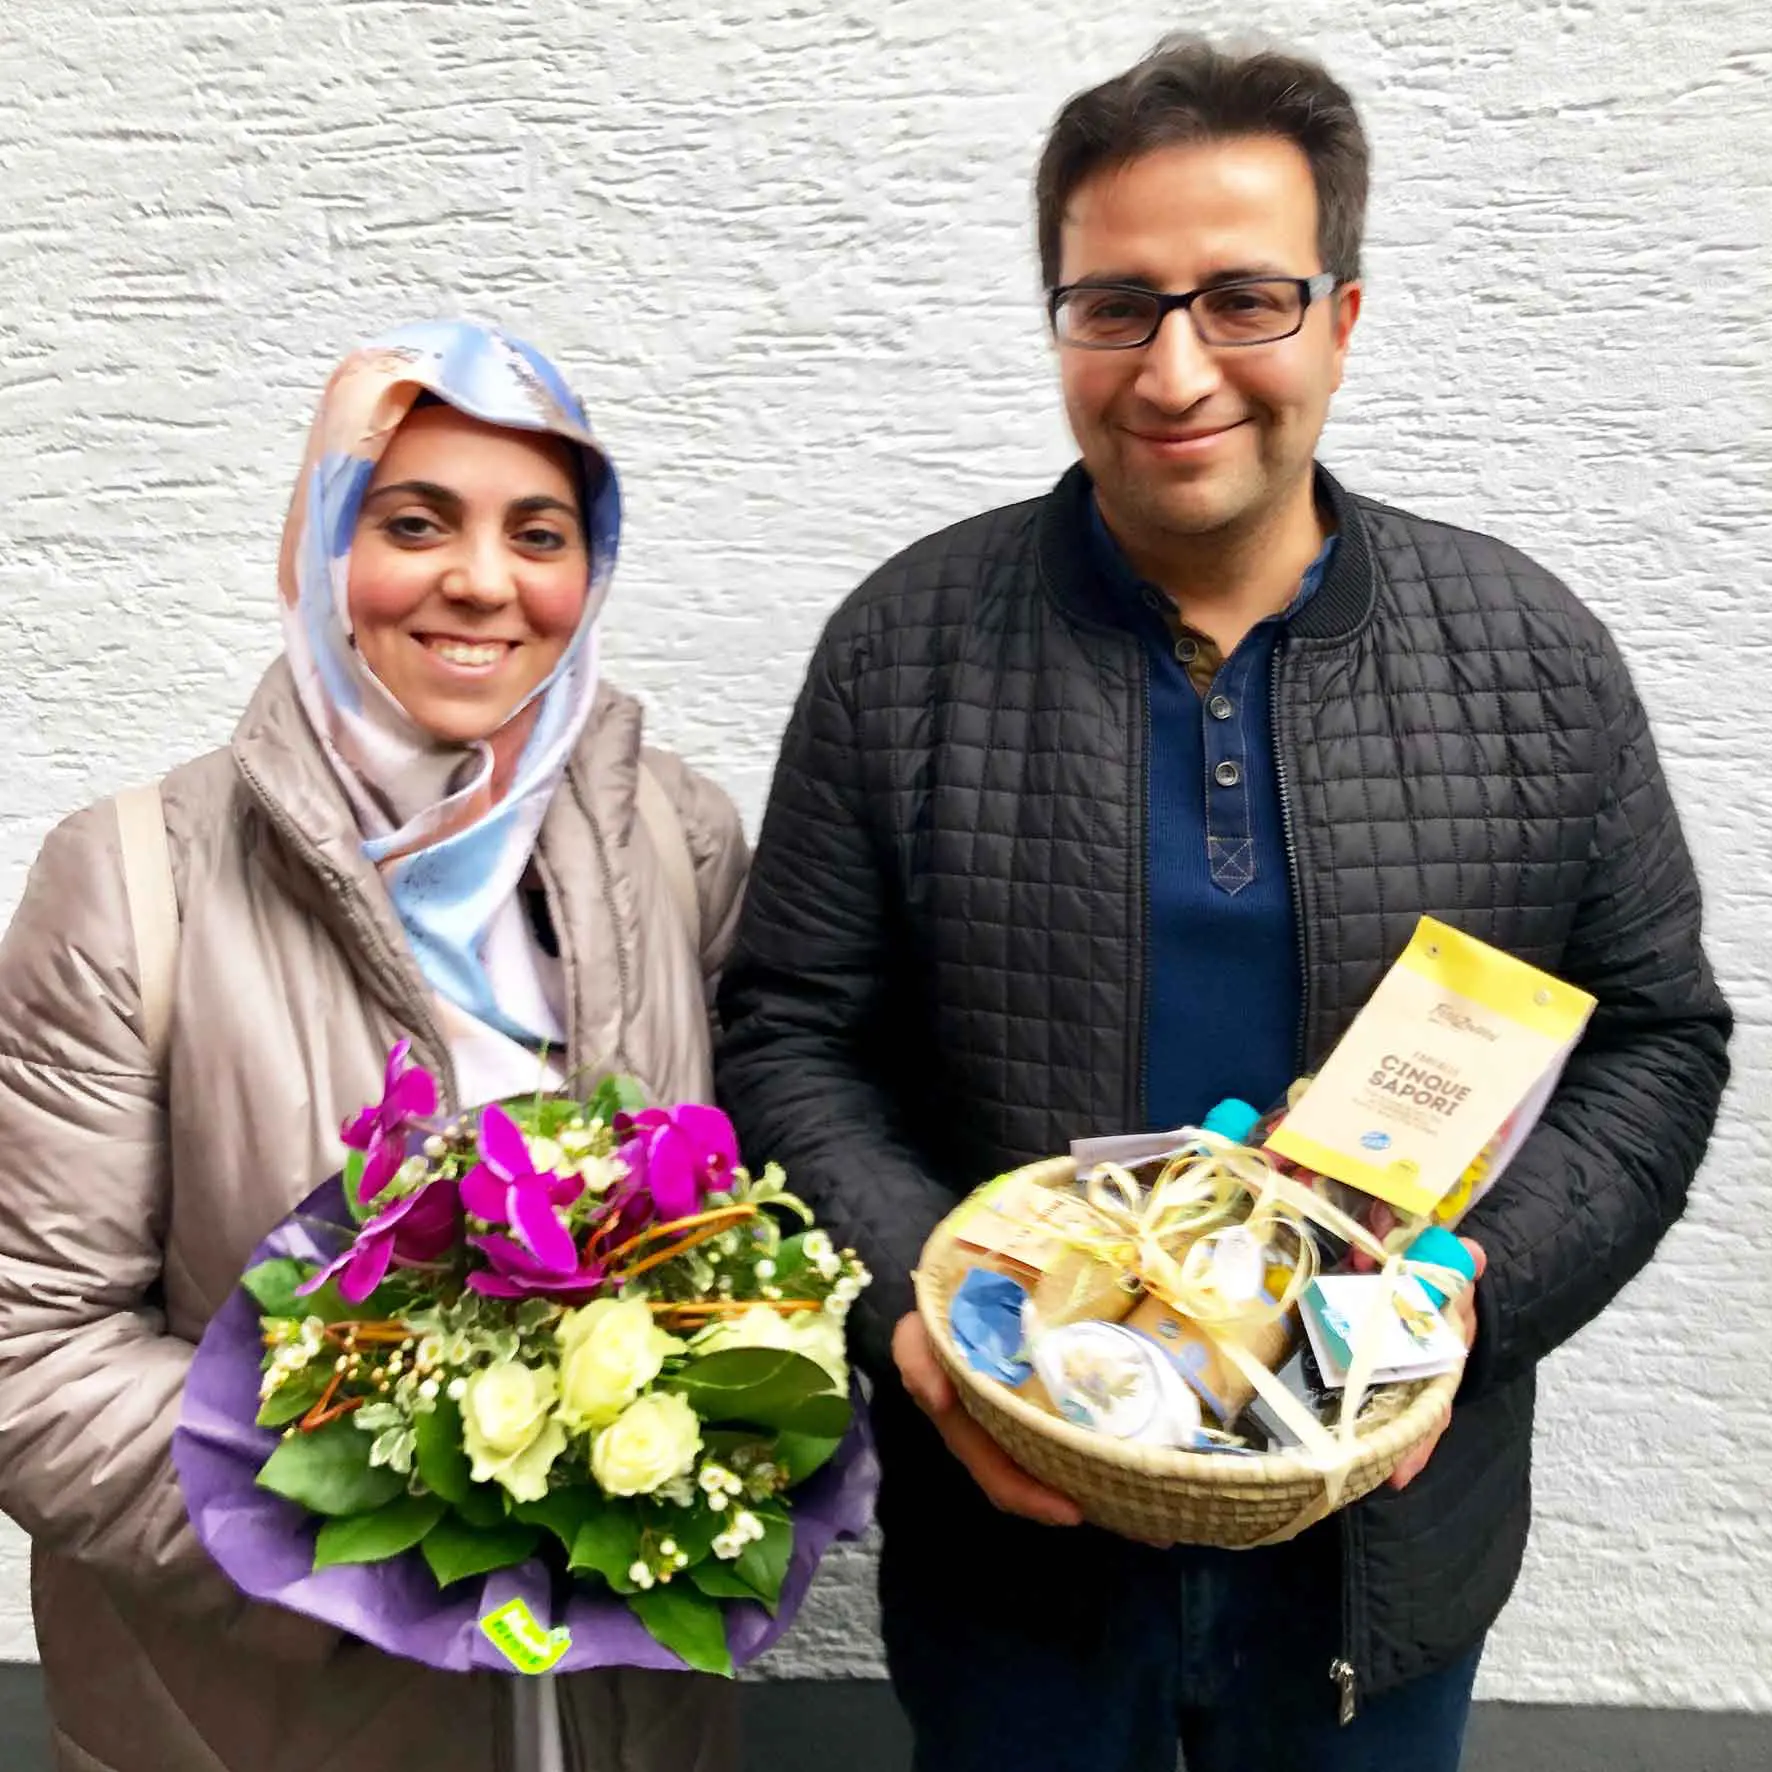 Zufriedene Immobilieneigentümer in Köln Immobilienmakler Köln nach erfolgreichem Notartermin mit überreichtem Blumenstrauß und Geschenkekorb